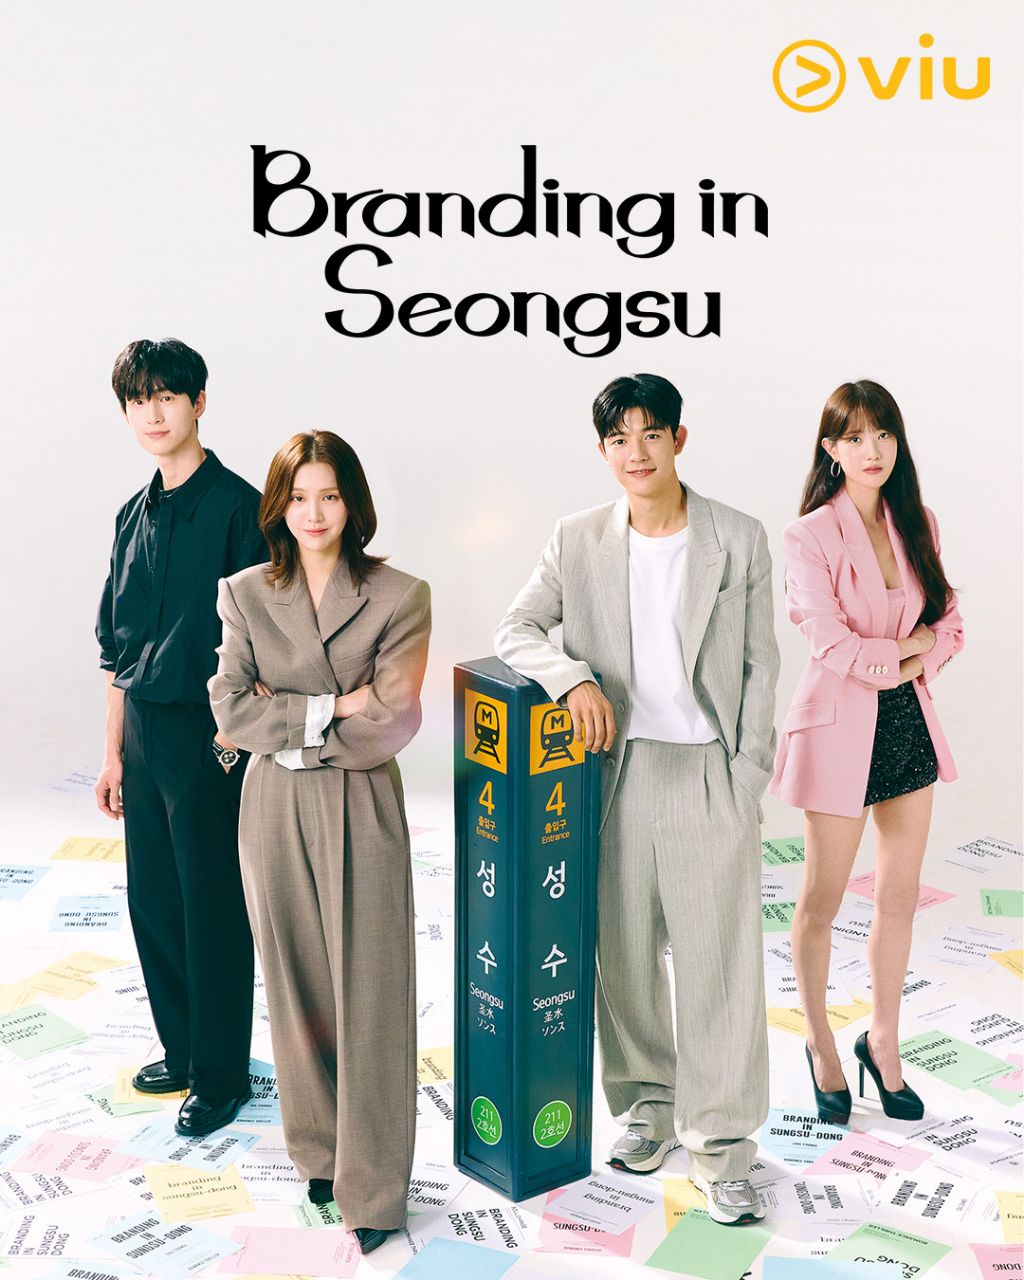 مسلسل العلامة التجارية في سيونغسو Branding in Seongsu الحلقة 4